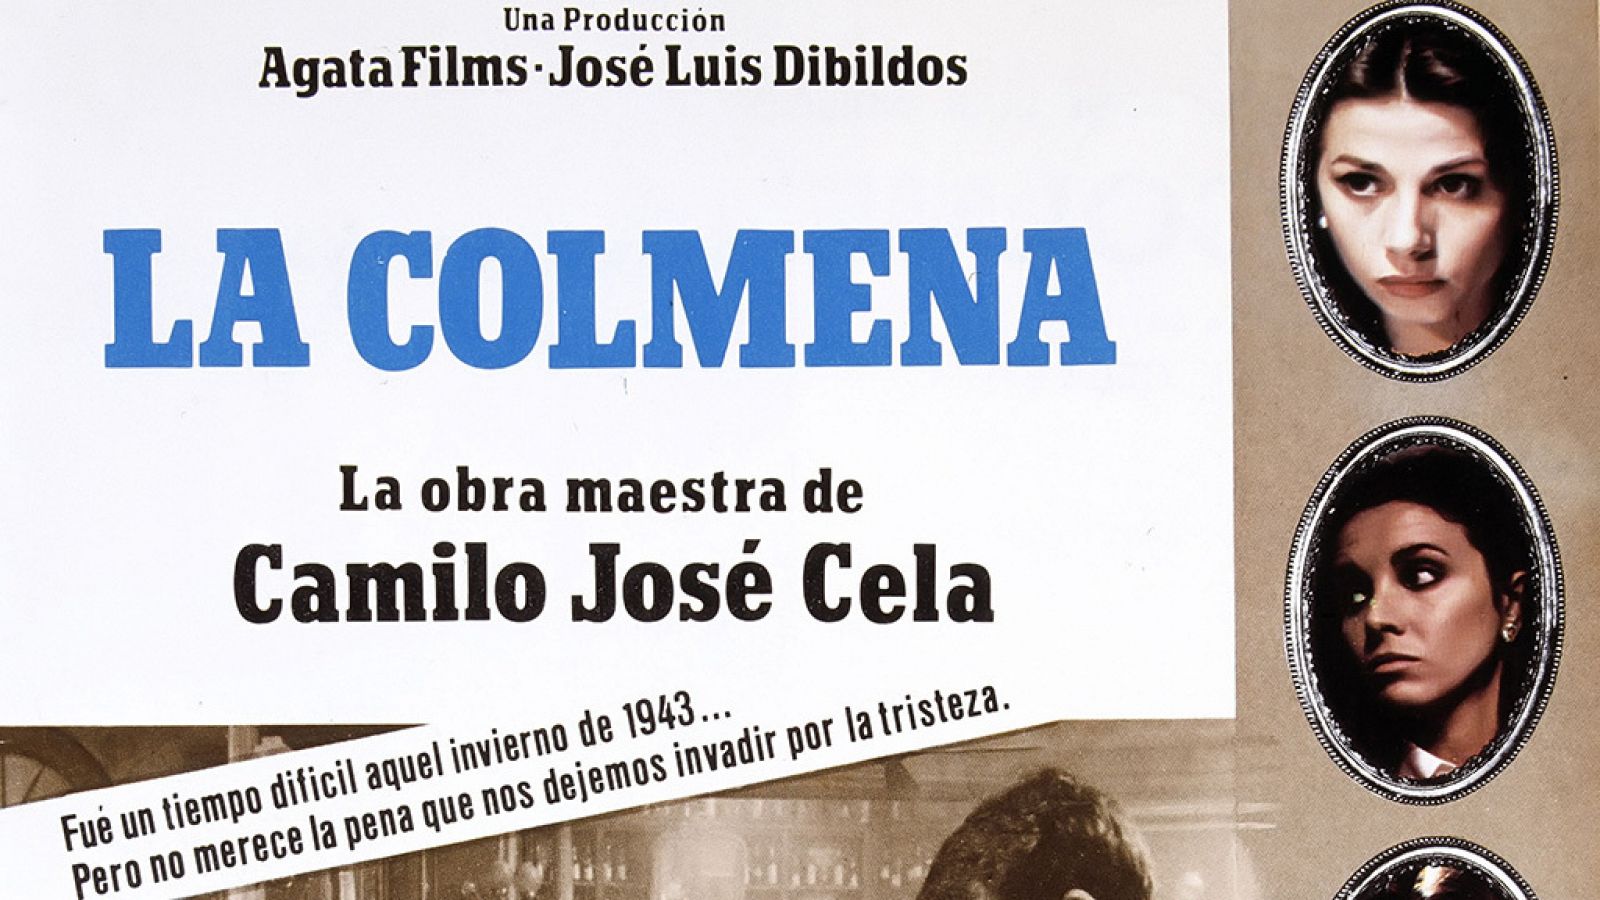 'La colmena' (1982), la obra maestra de Camilo josé Cela, dirigida por Mario Camus